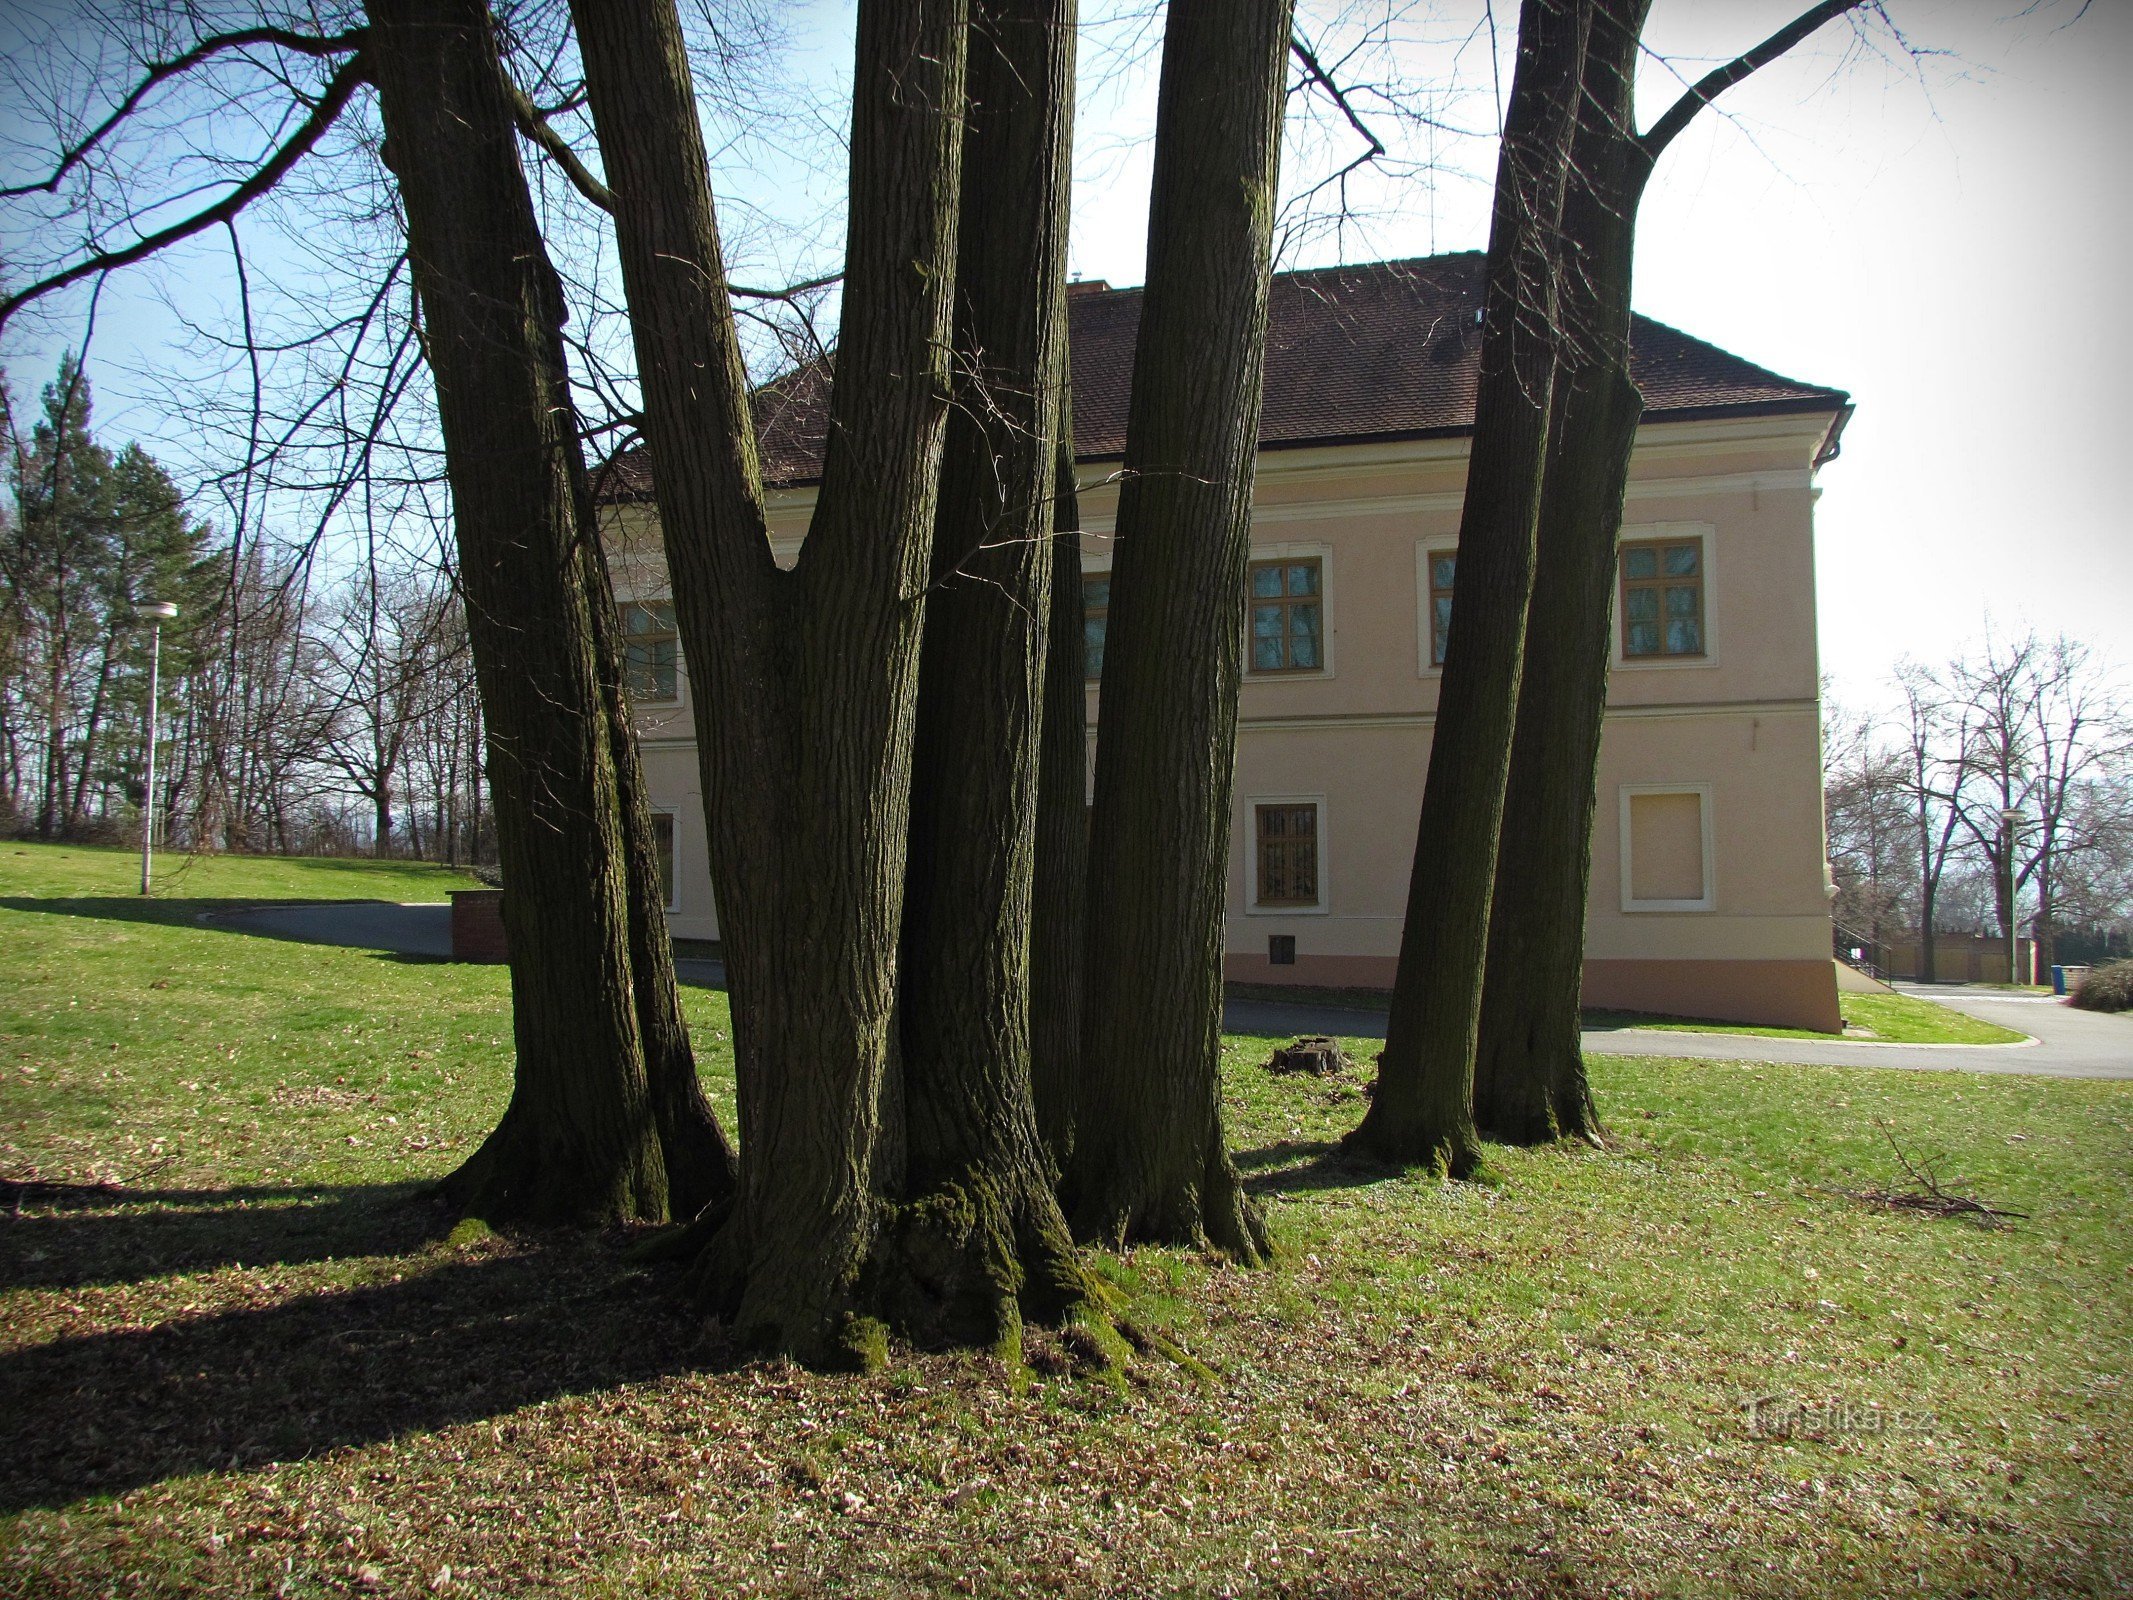 Klečůvka - 城堡和公园